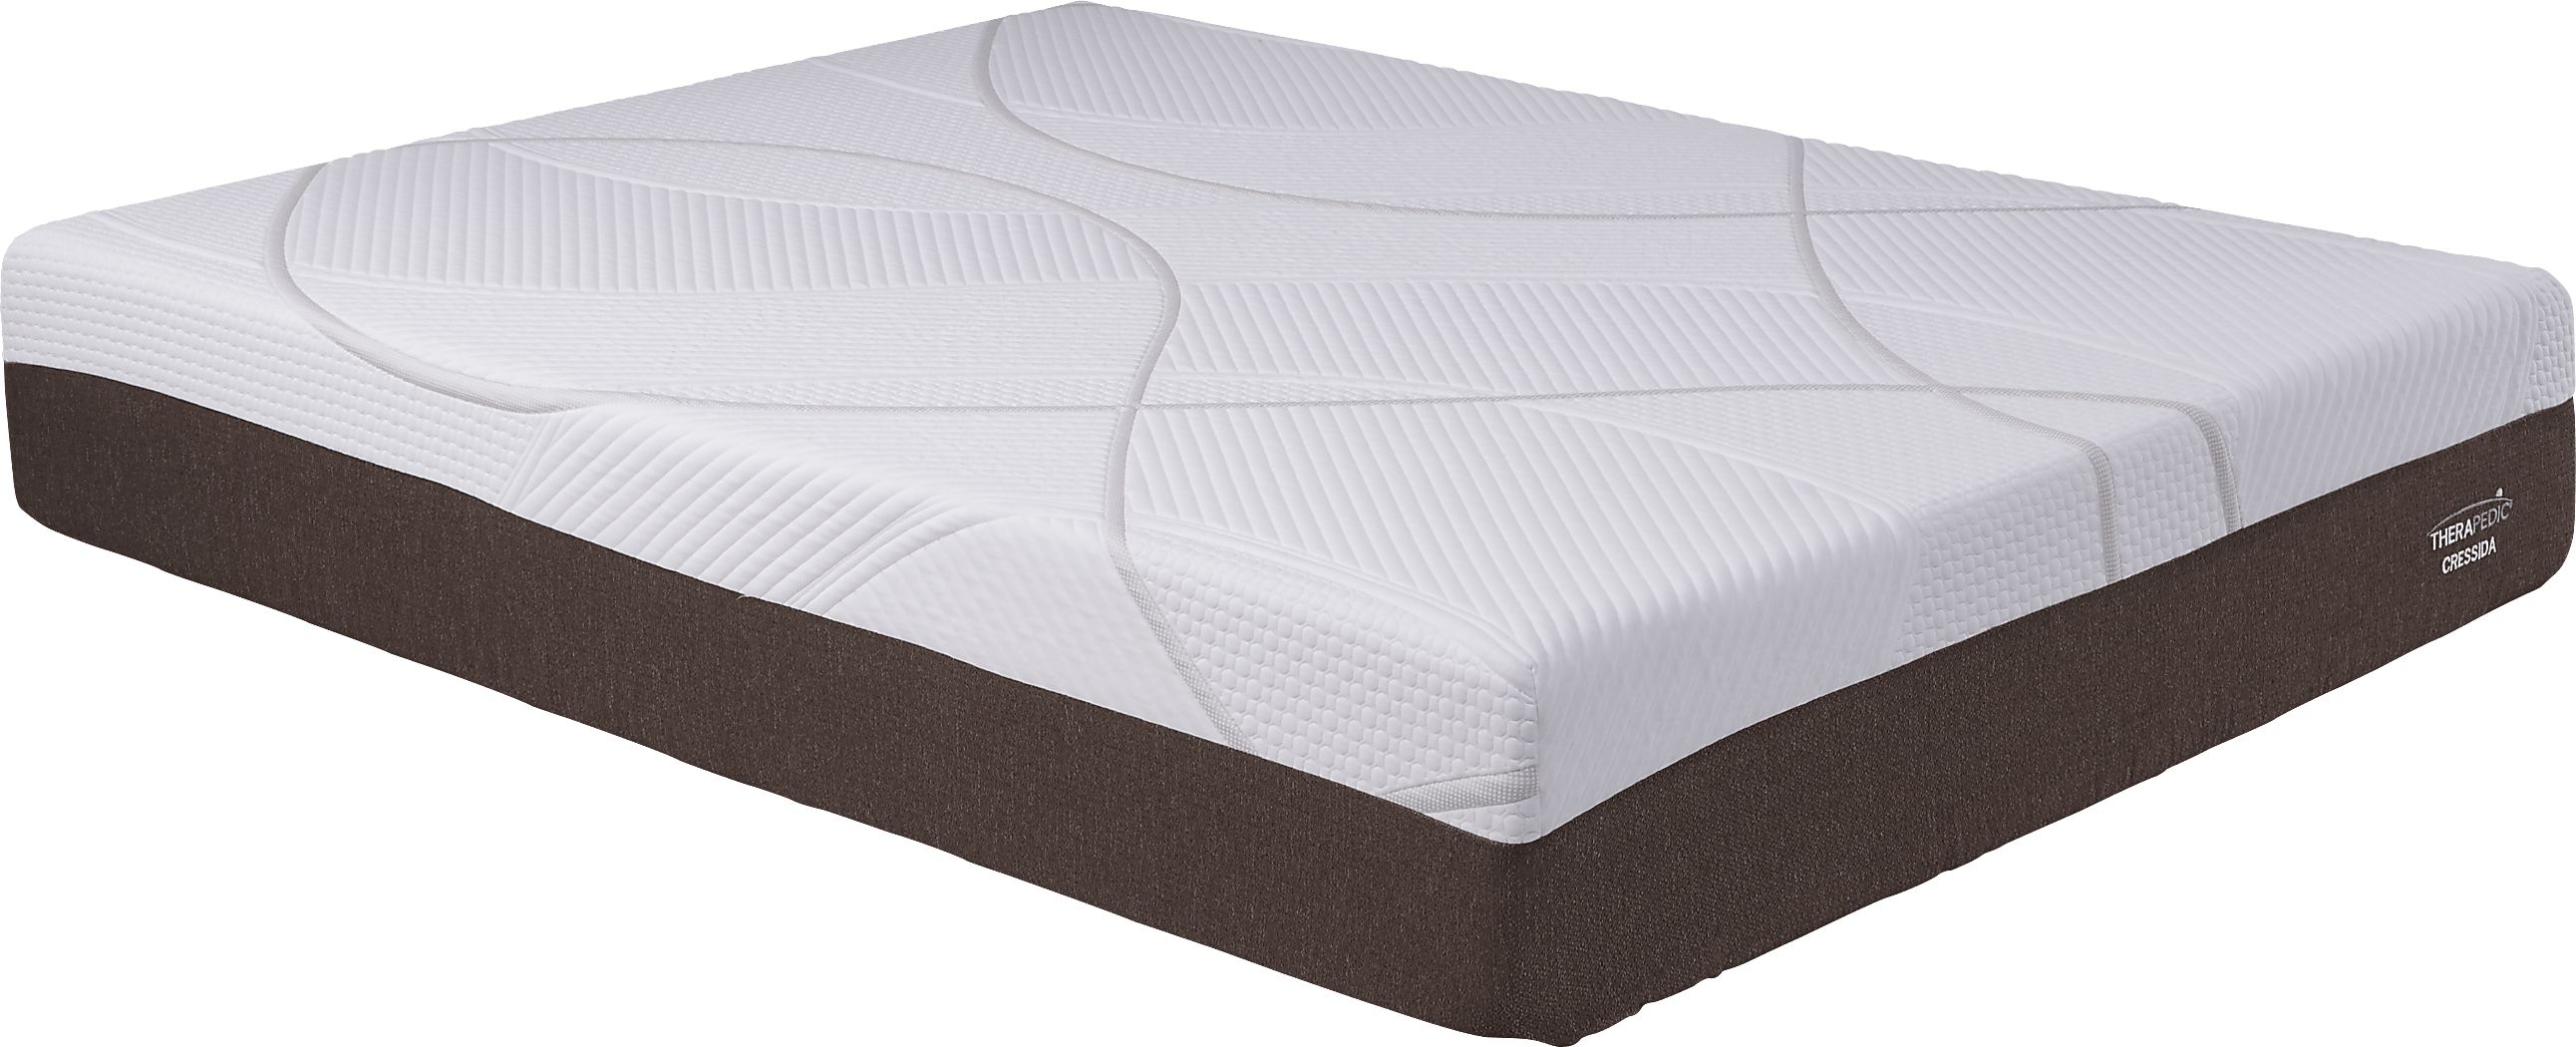 therapedic berkley queen mattress set review